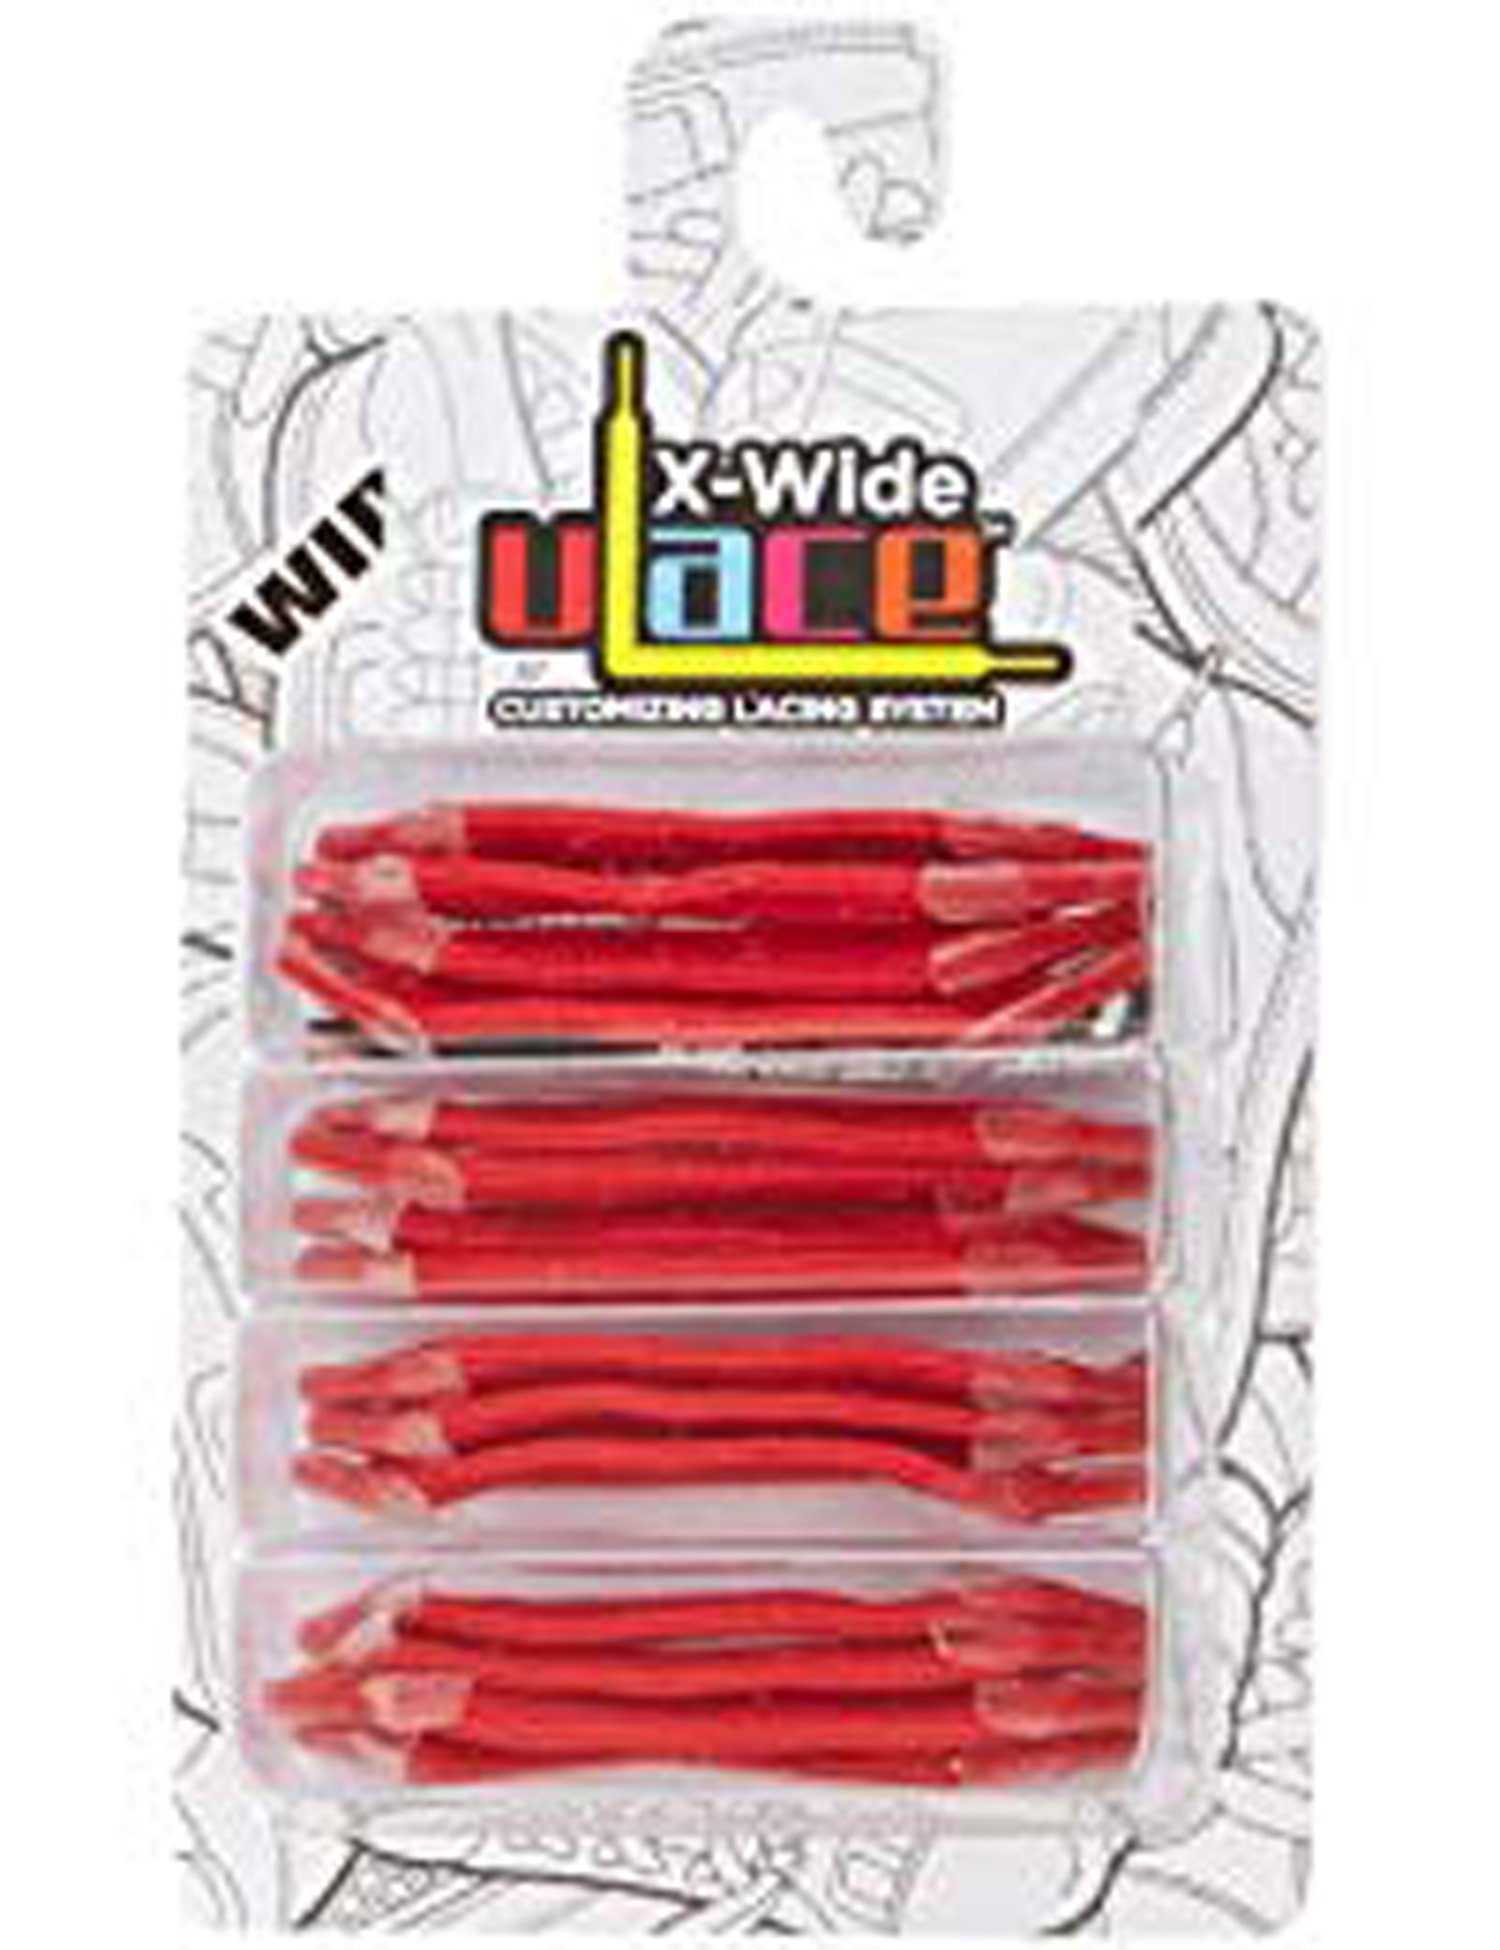 U-Laces Schnürsenkel X-Wide Fatties 16 Stück - elastische Schnürsenkel mit Wiederhaken Scarlet